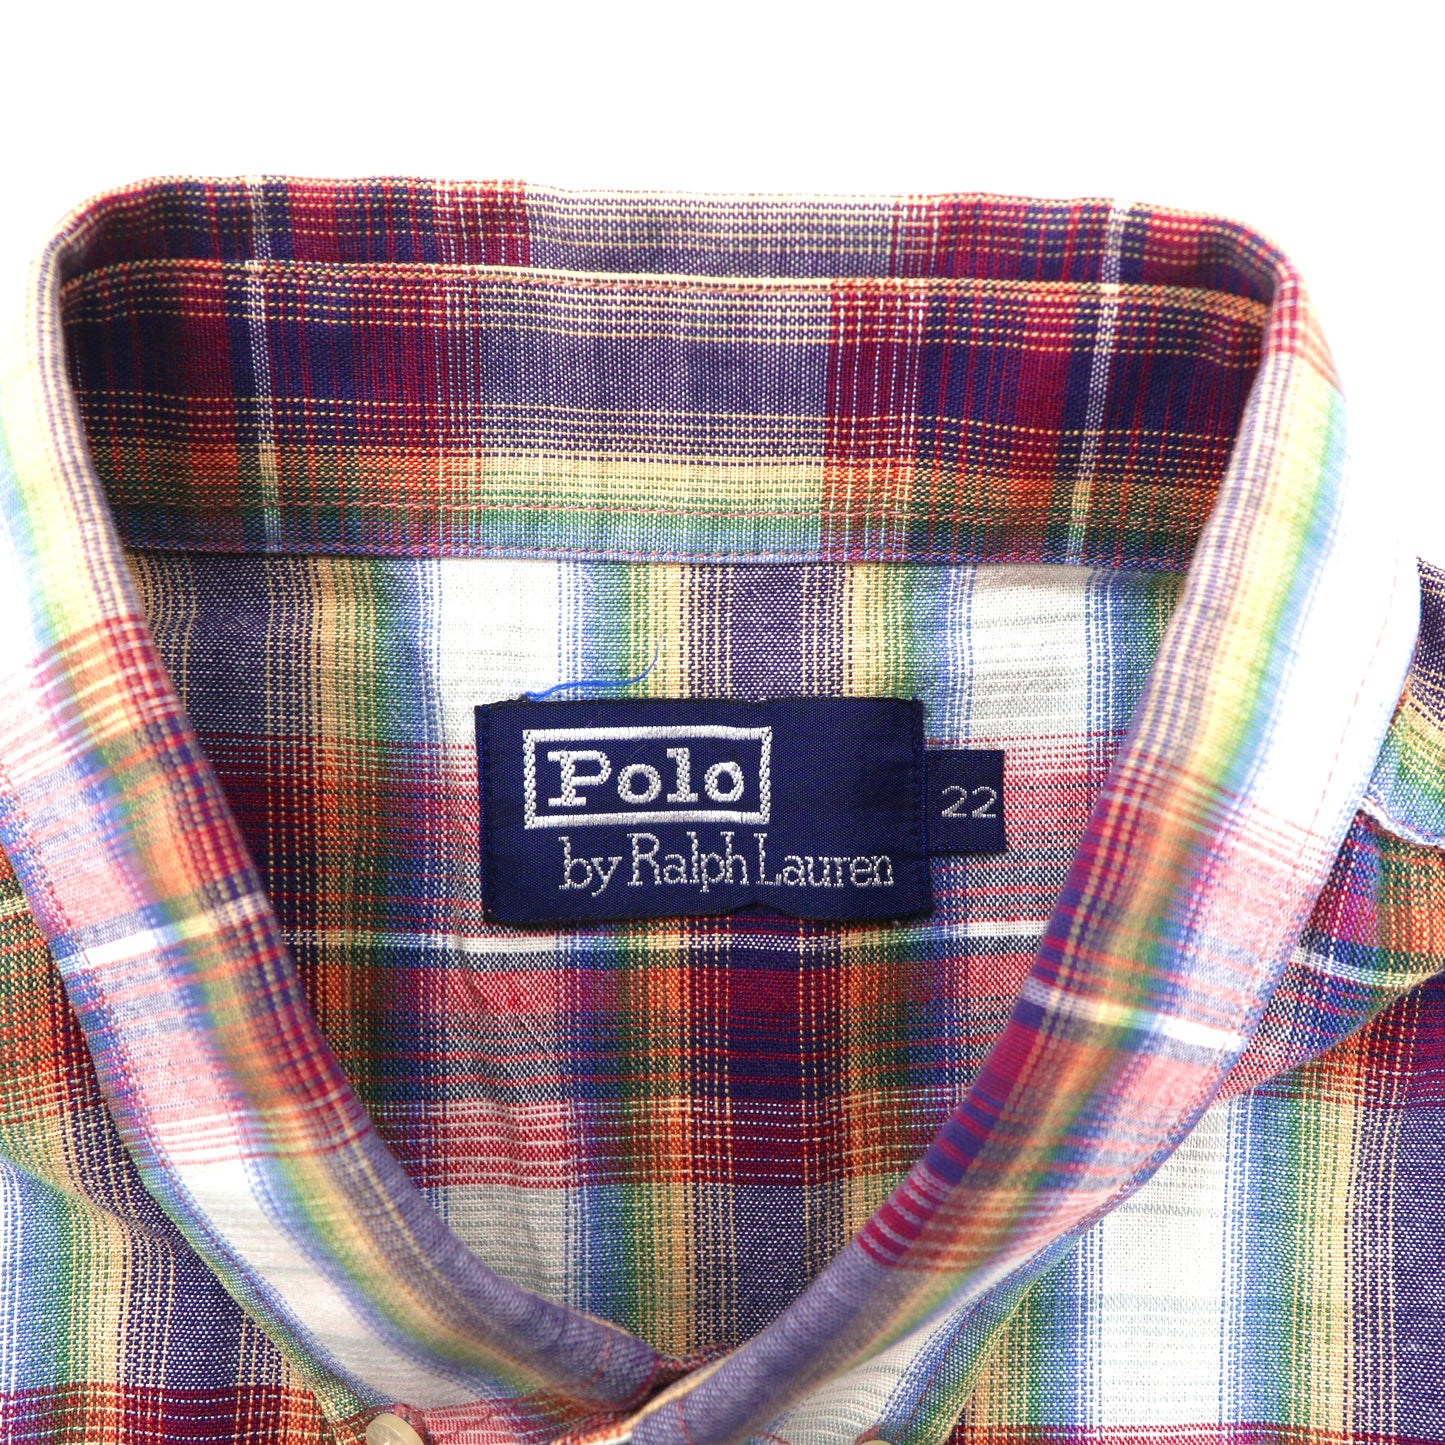 Polo by Ralph Lauren ボタンダウンシャツ 22 マルチカラー チェック コットン スモールポニー刺繍